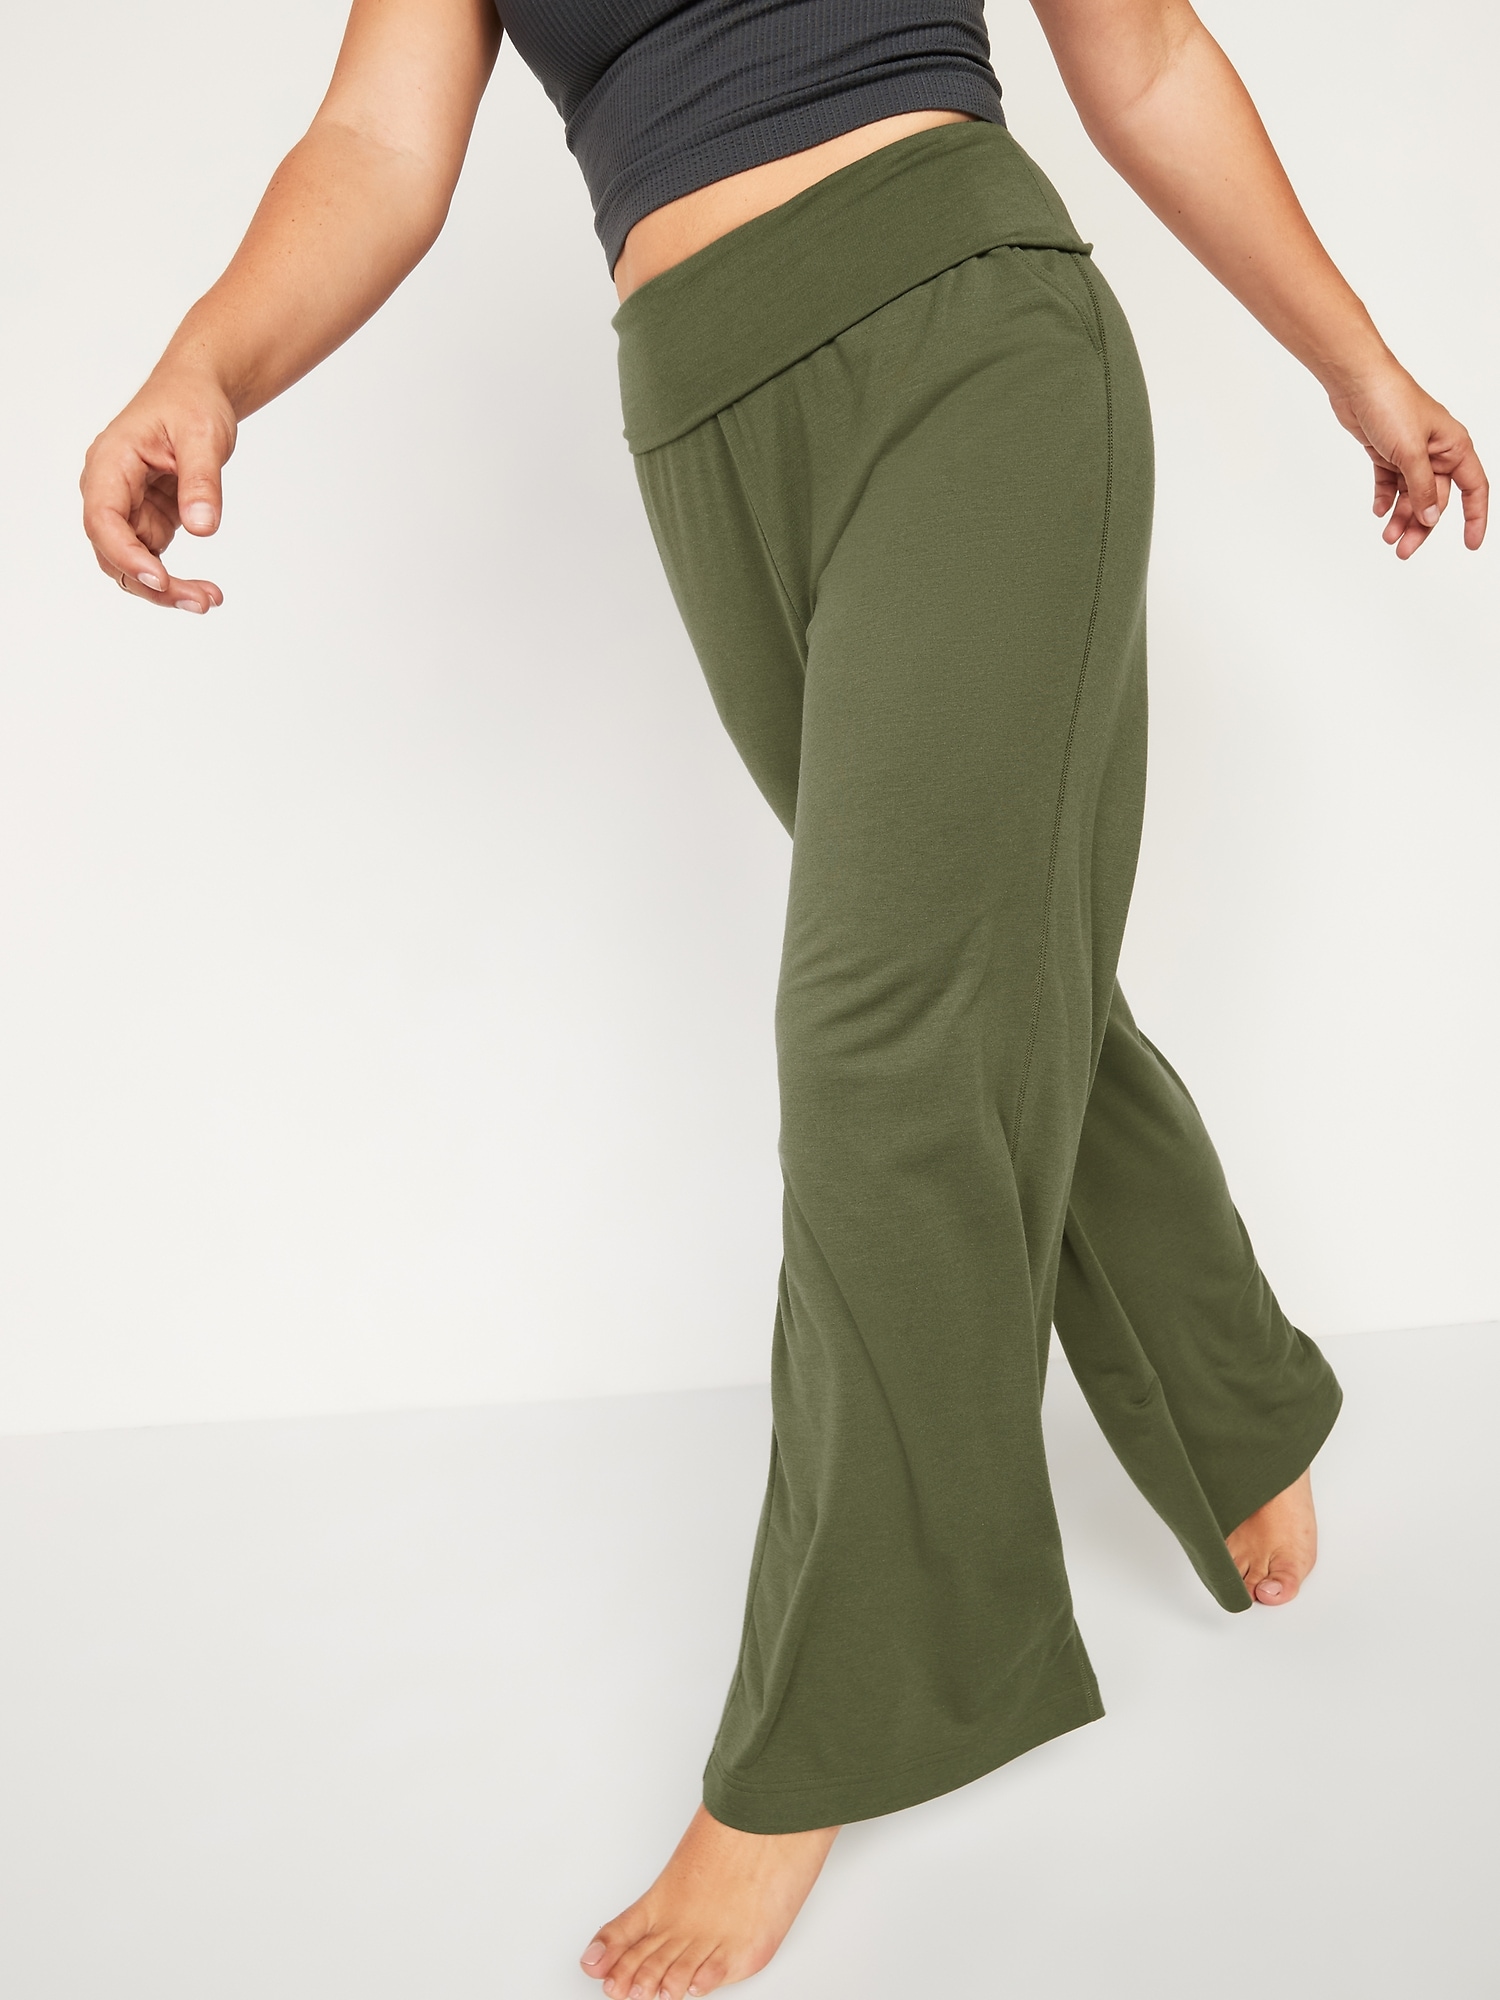 Yoga Pants, Foldover Yoga Pants & More